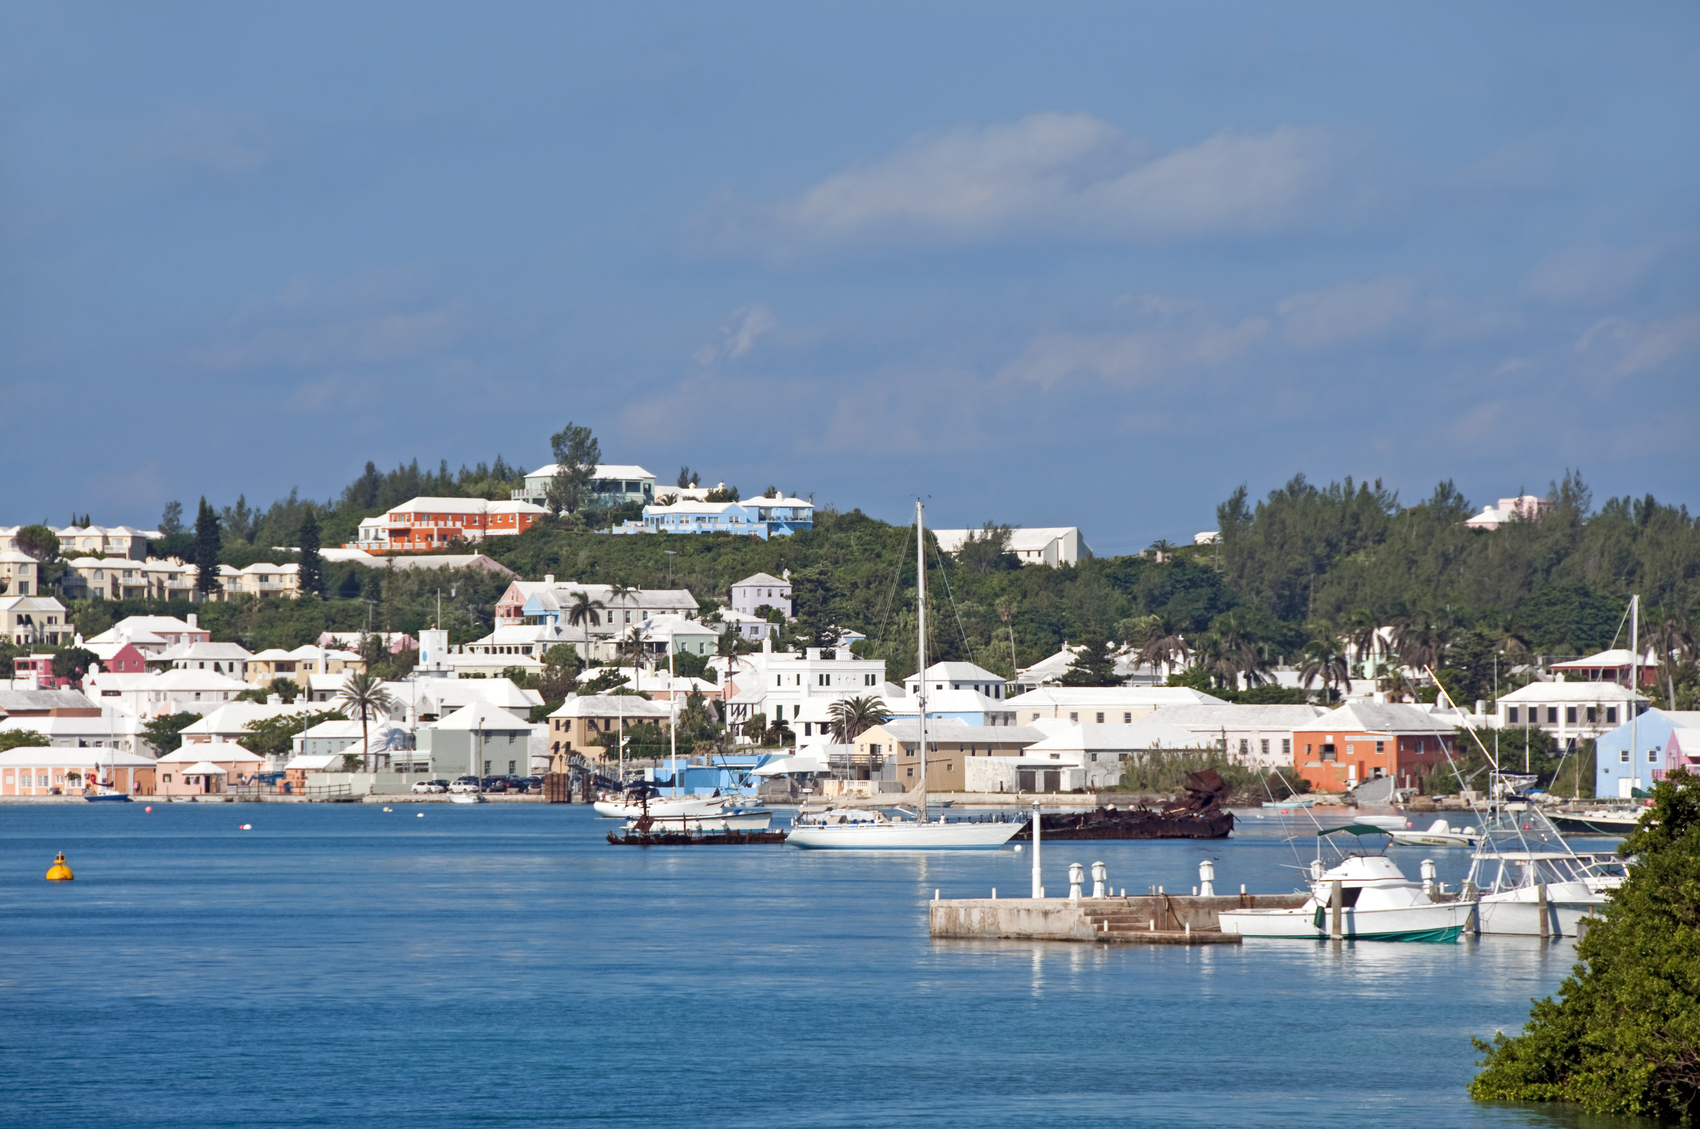 St. Georges Harbor, Bermuda 2